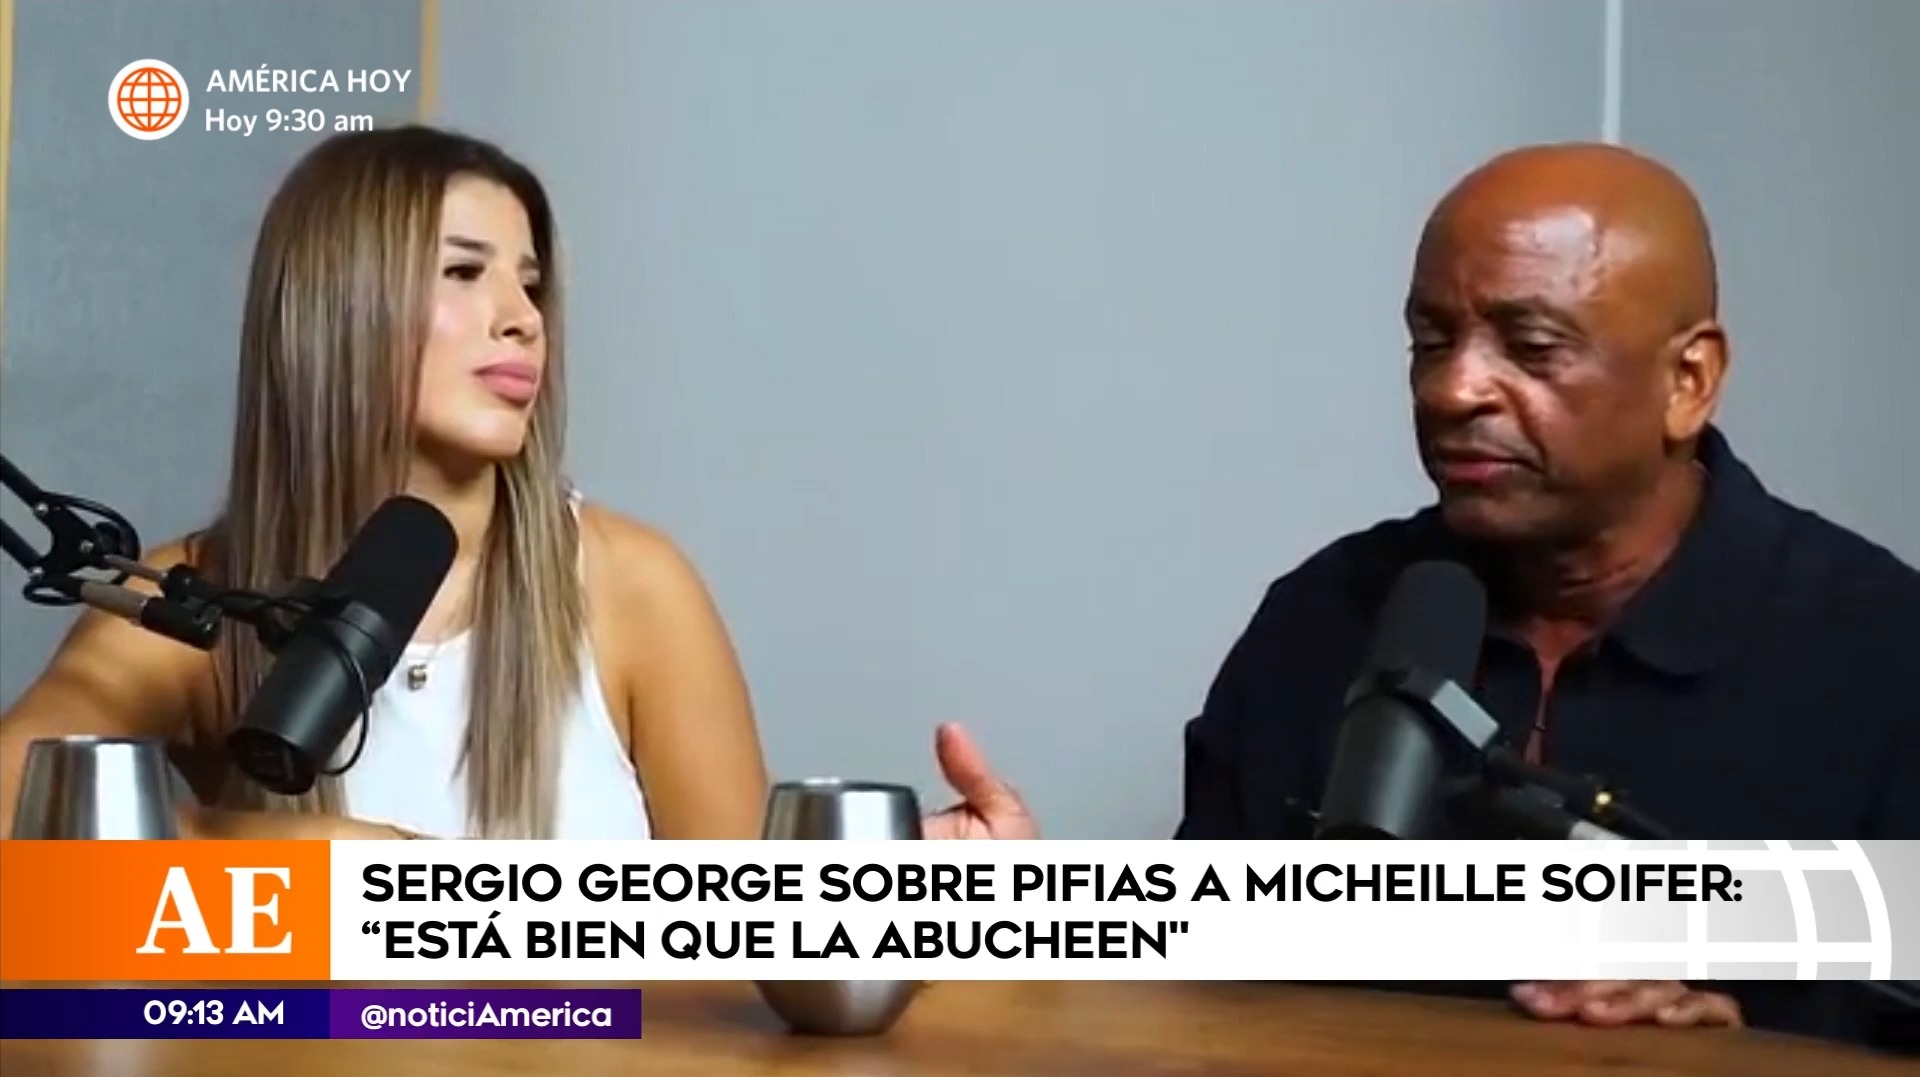 Sergio George sobre pifias a Michelle Soifer: “Está bien, eso no te destruye la carrera” 